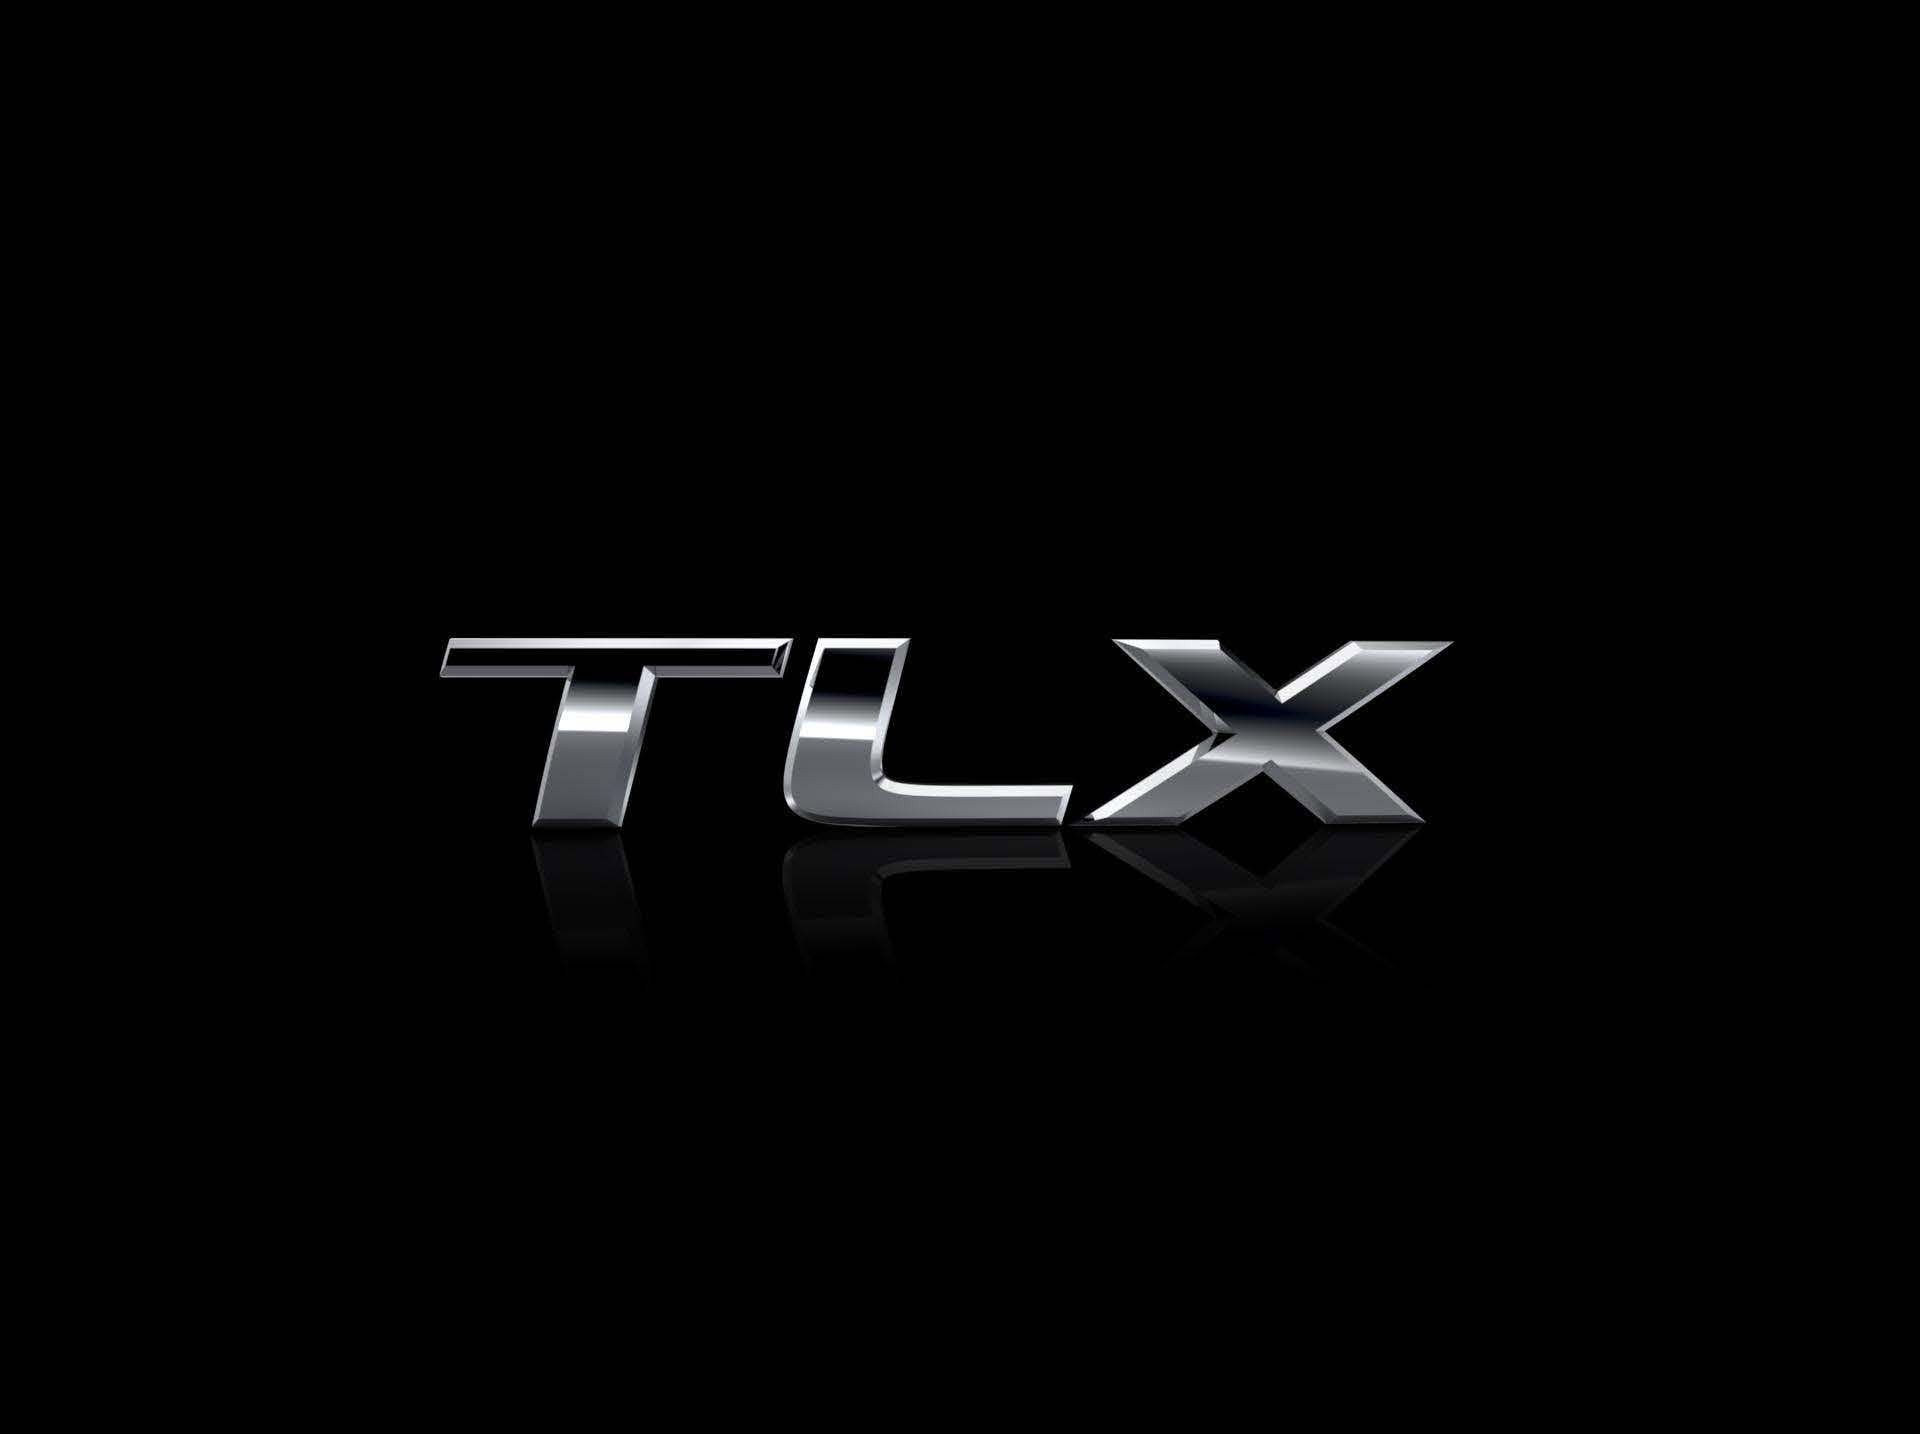 2015 Acura TLX Prototype